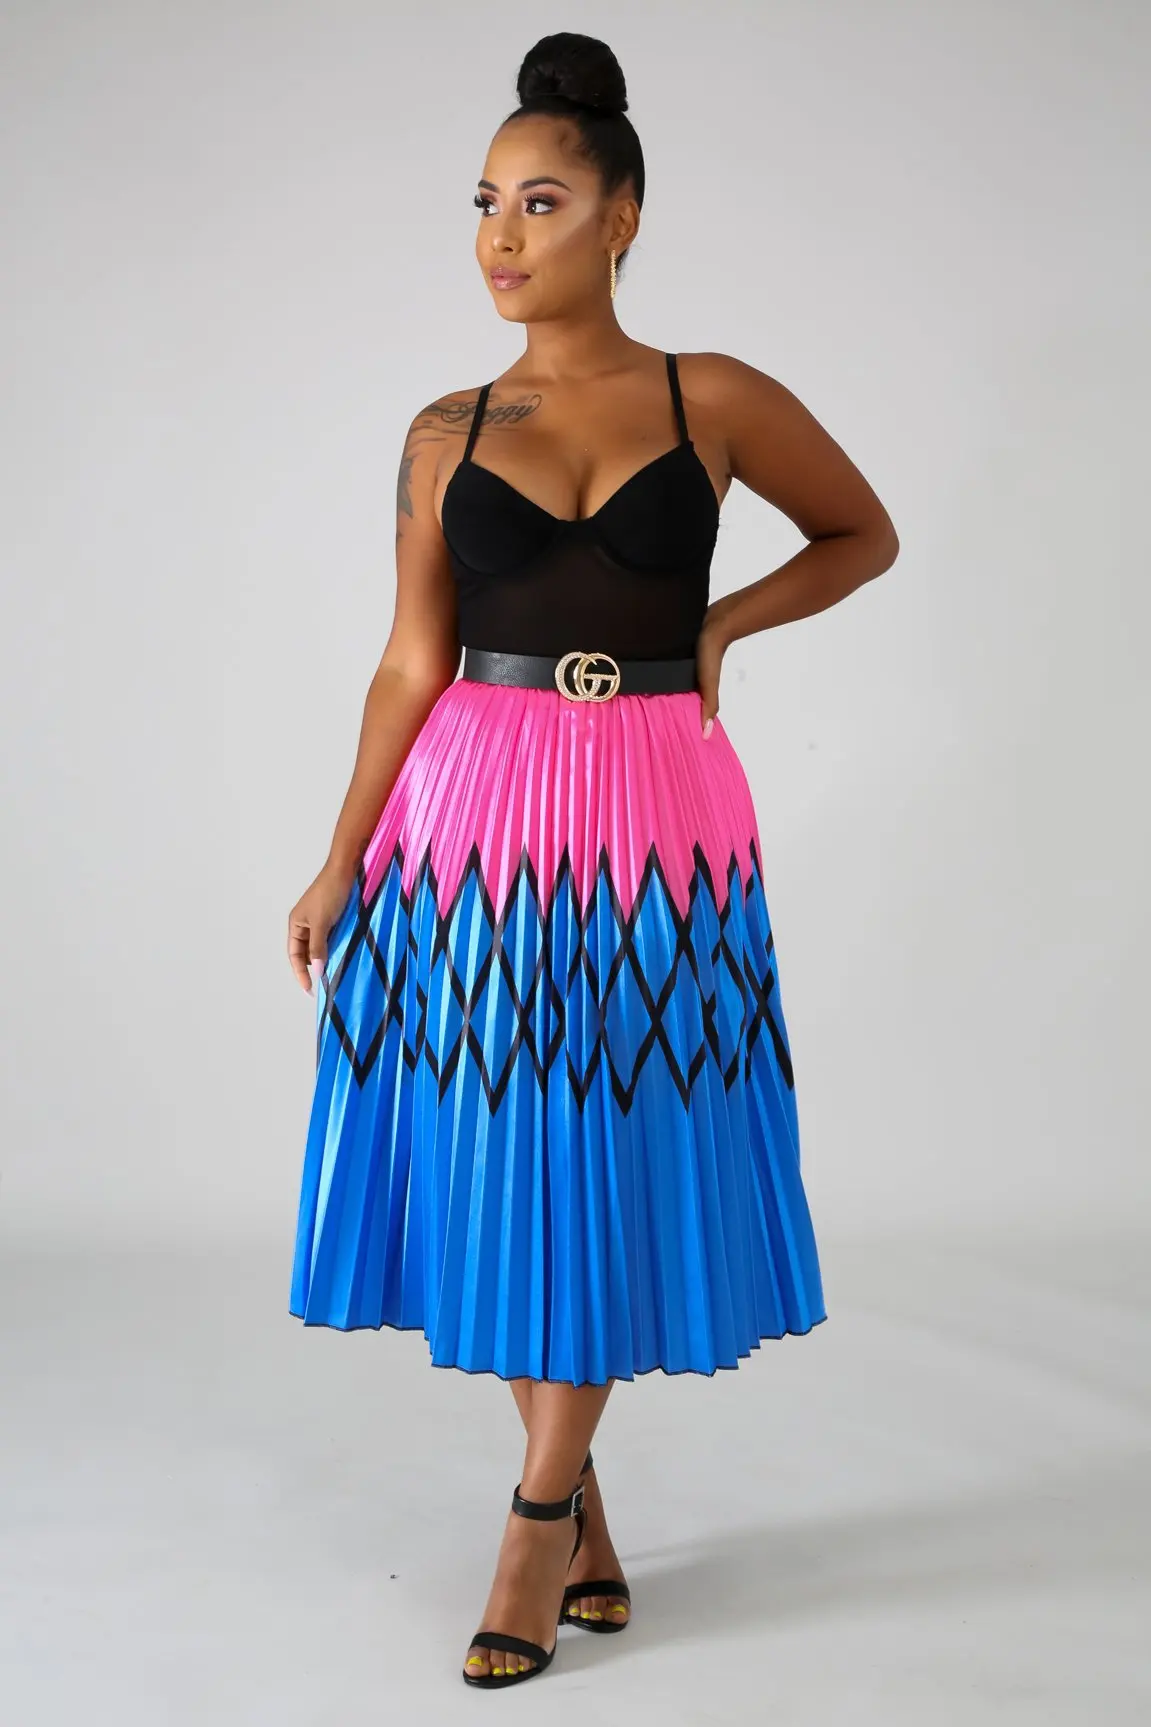 22 самых продаваемых, уникально стилизованные плиссированные юбки с плиссированными юбками. Атласная Повседневная летняя